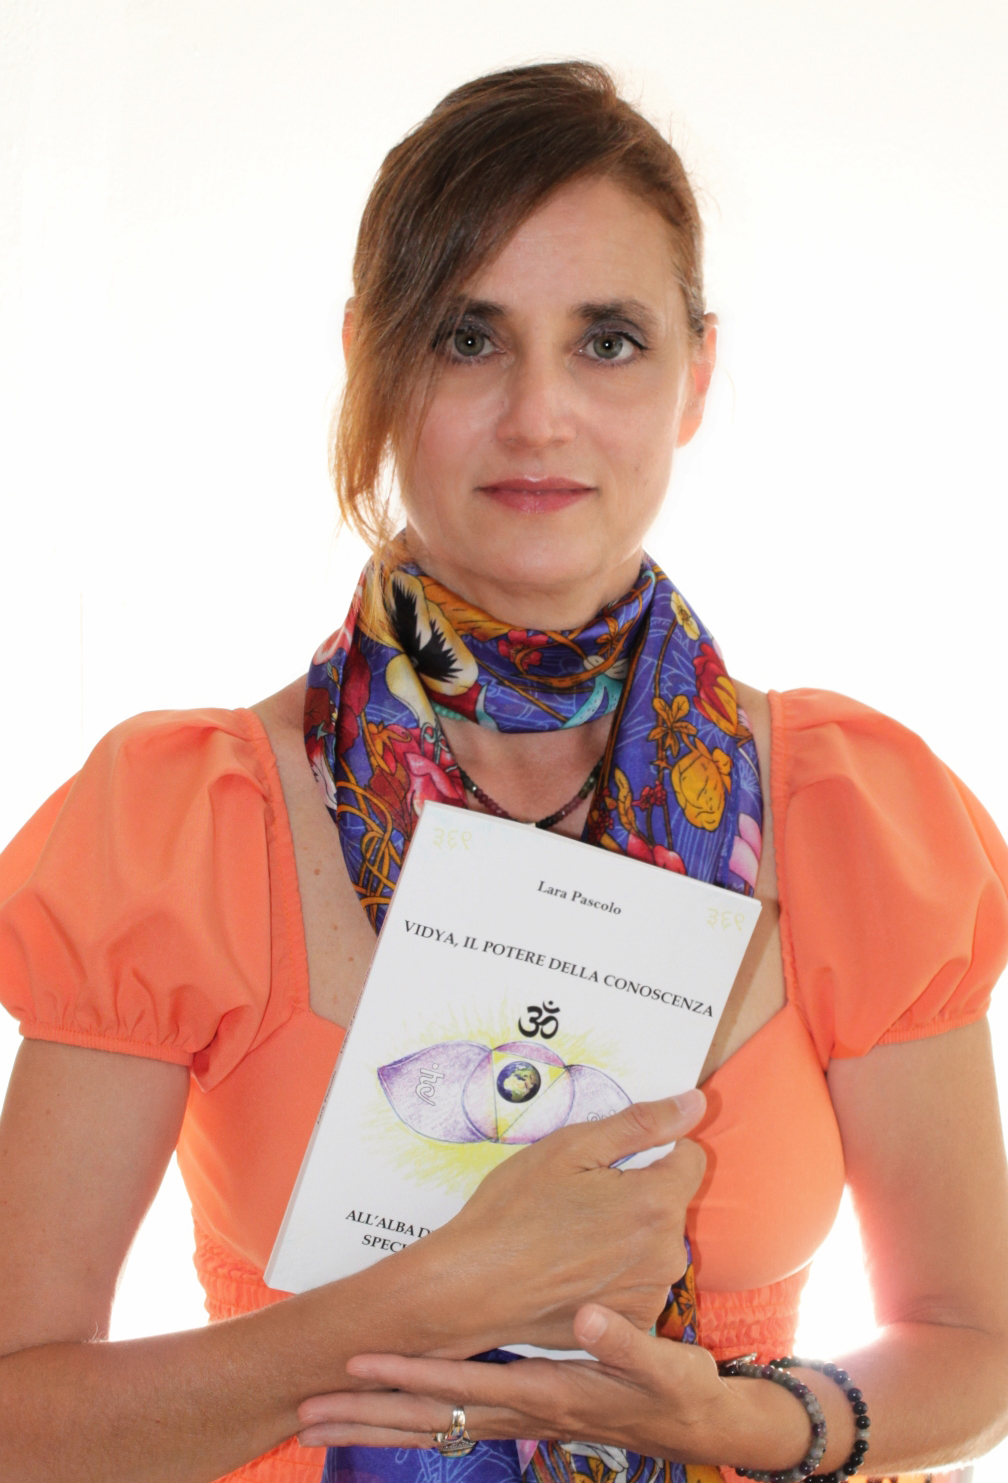 Libreria esoterica Anima Eventi (Milano), presentazione del libro “Vidya, il potere della conoscenza” di Lara Pascolo